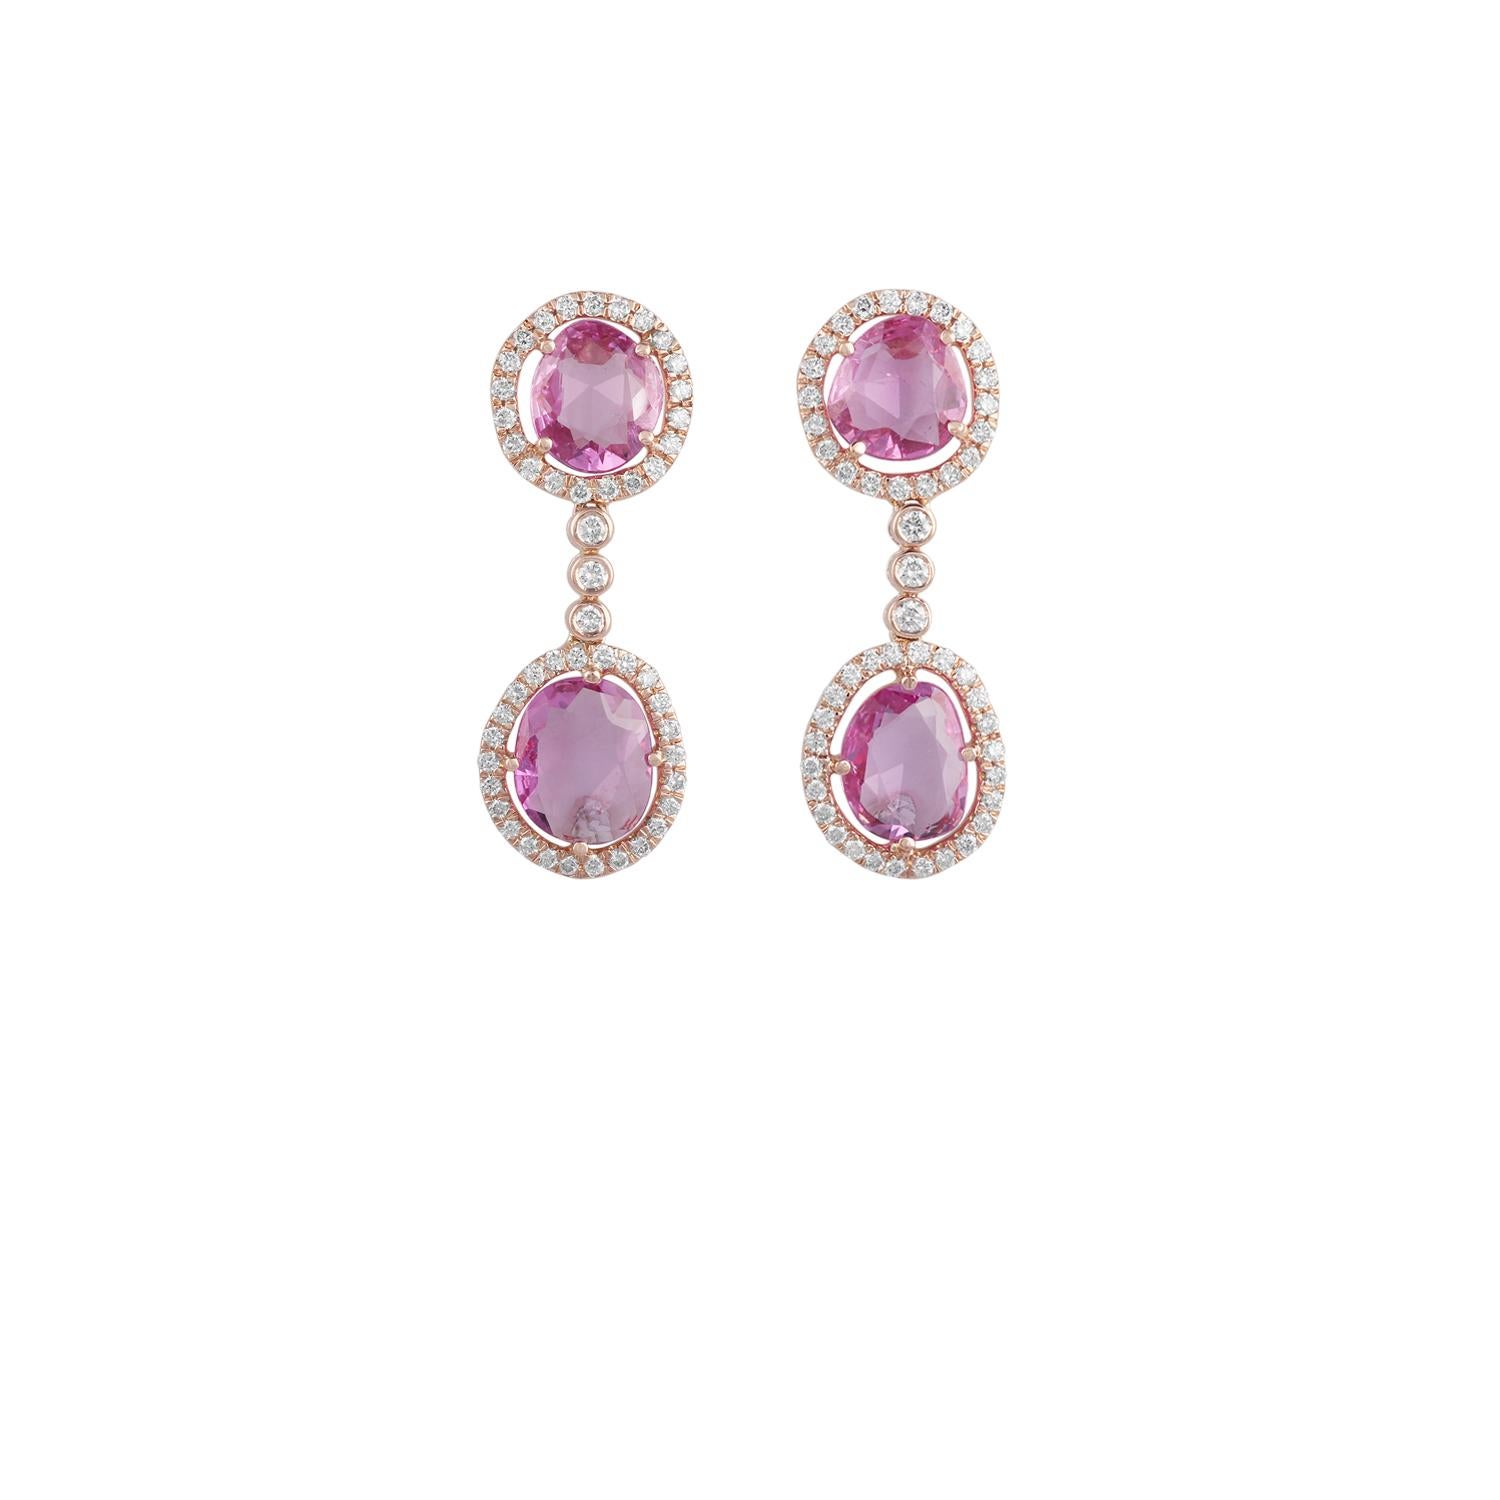 Rose Cut Pink Sapphire - 5.30 Carat
Round Shaped Diamond - 0.77 Carat
18 Karat Rose Gold - 4.82 Grams
